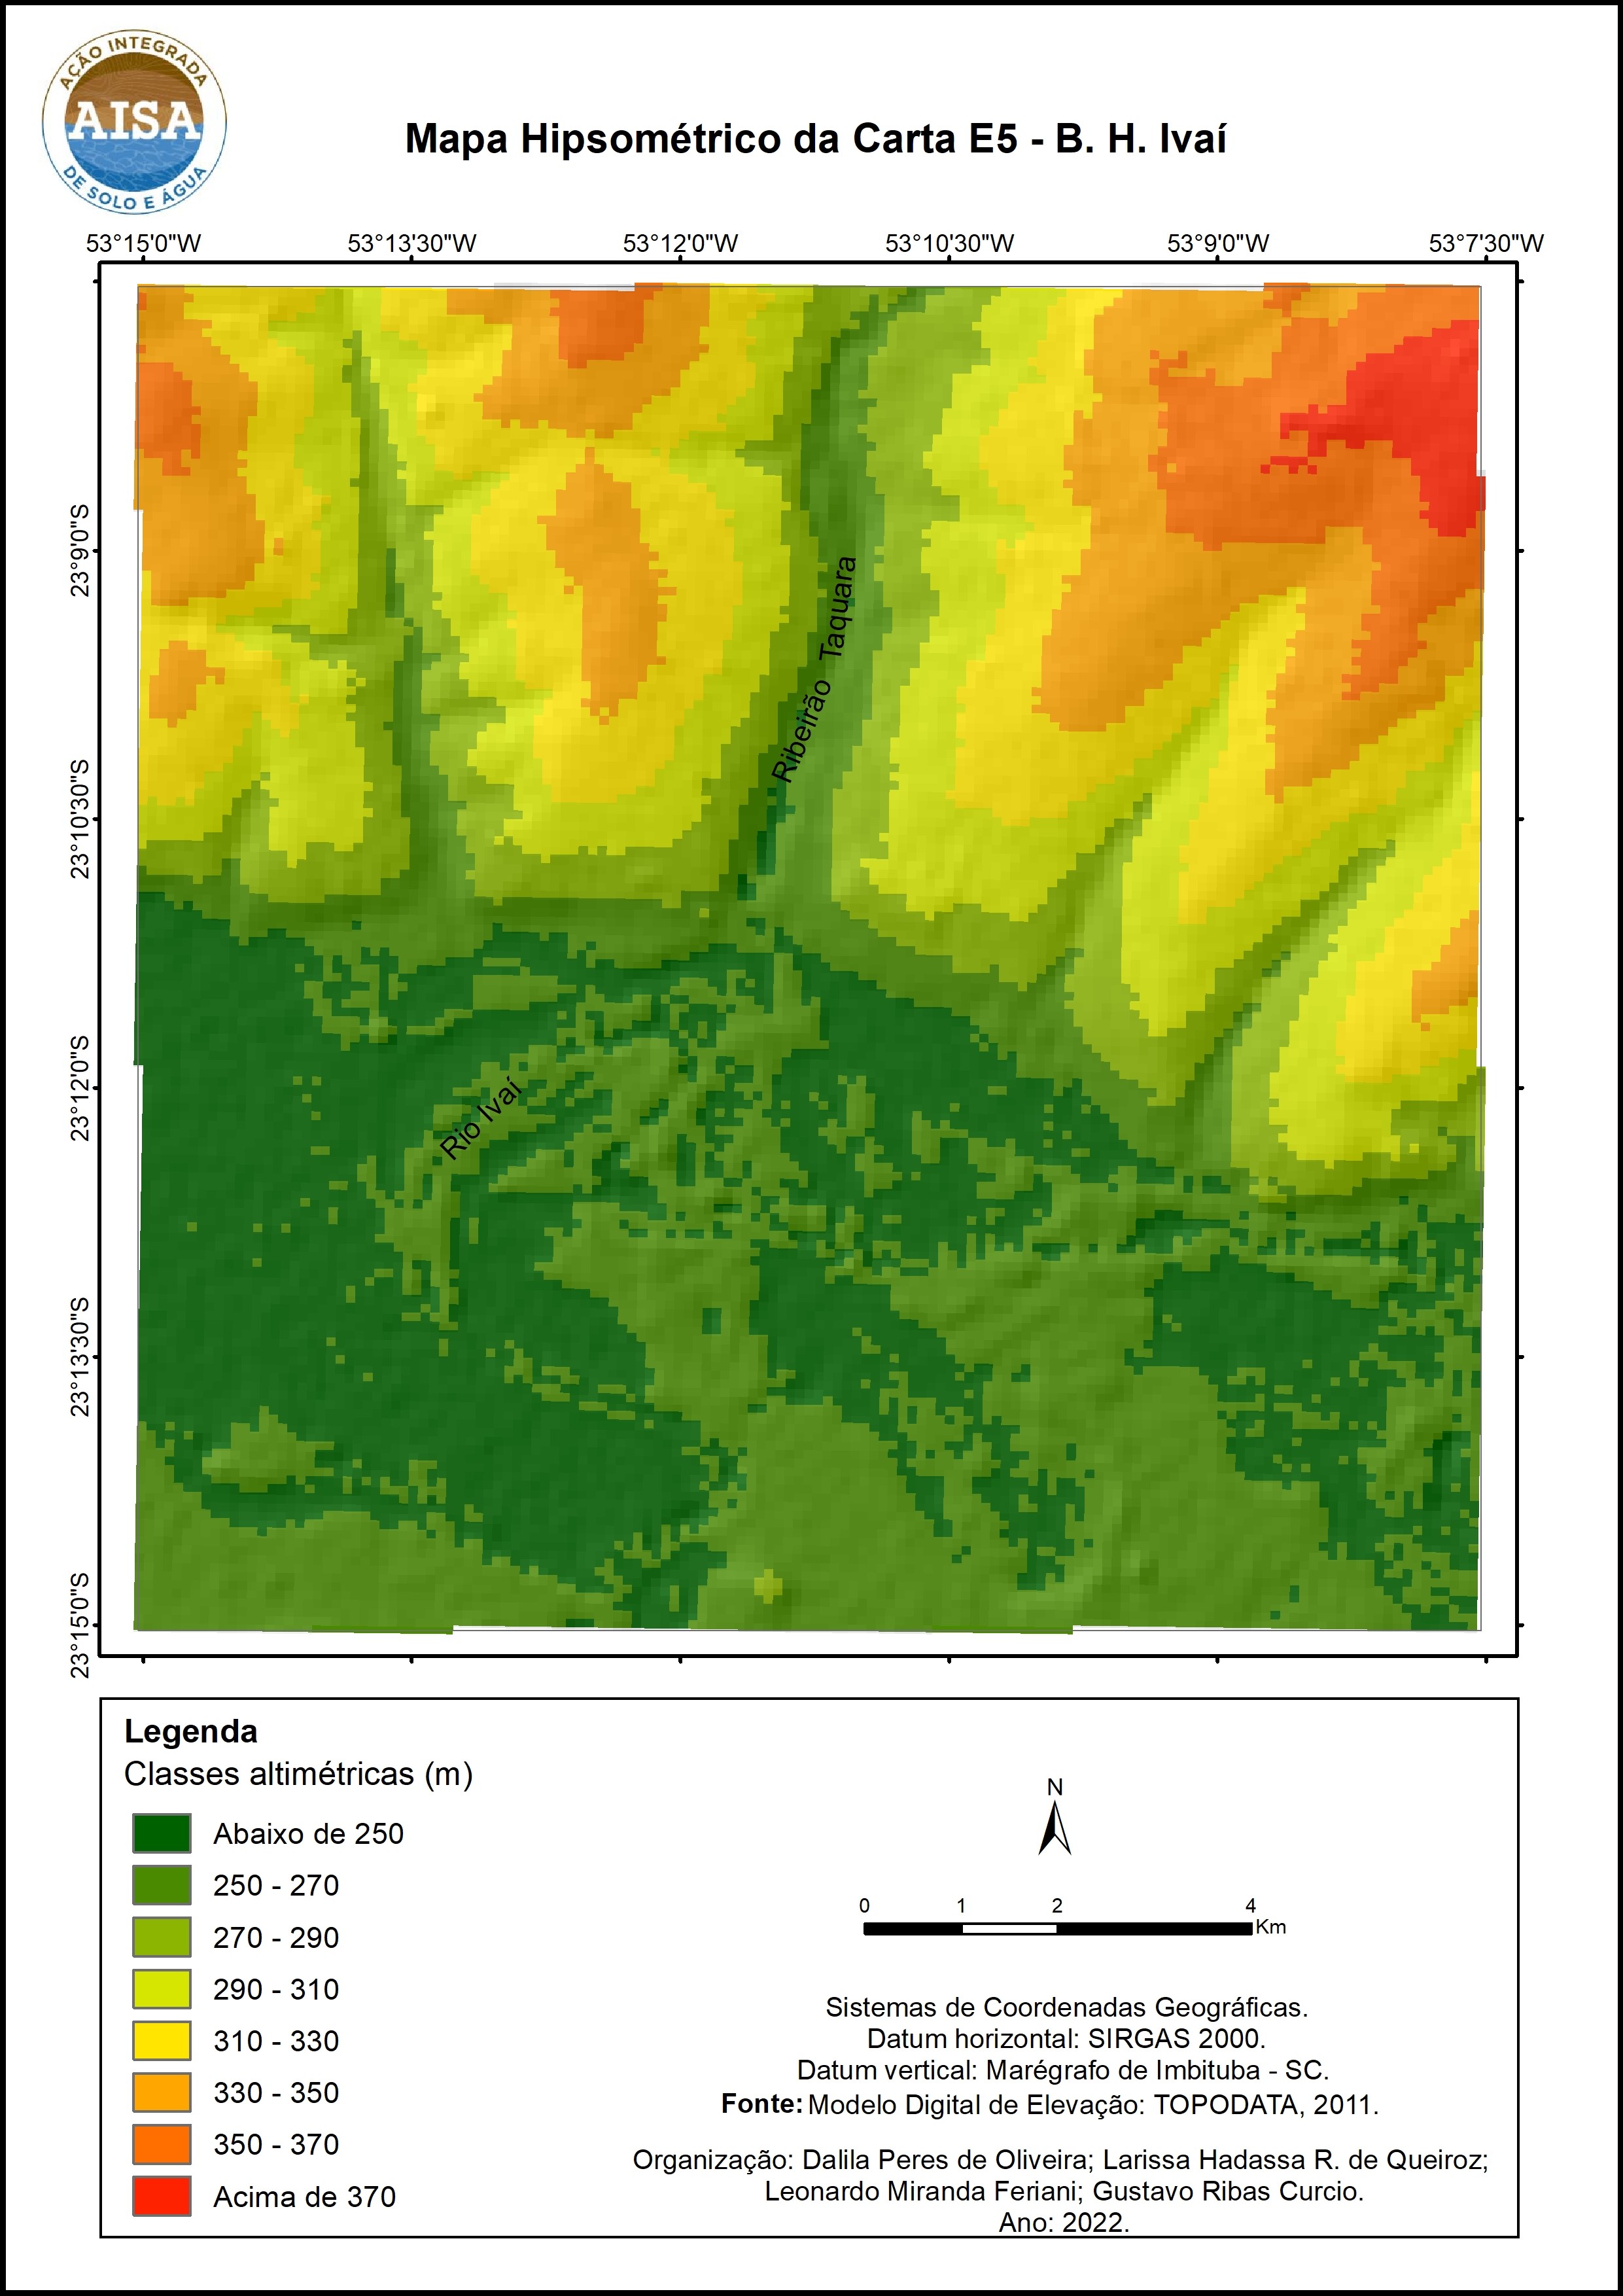 Figura 3 – Mapa hipsométrico associado ao hillshade de região compreendida pelo Projeto AISA na Bacia Hidrográfica do Rio Ivaí.